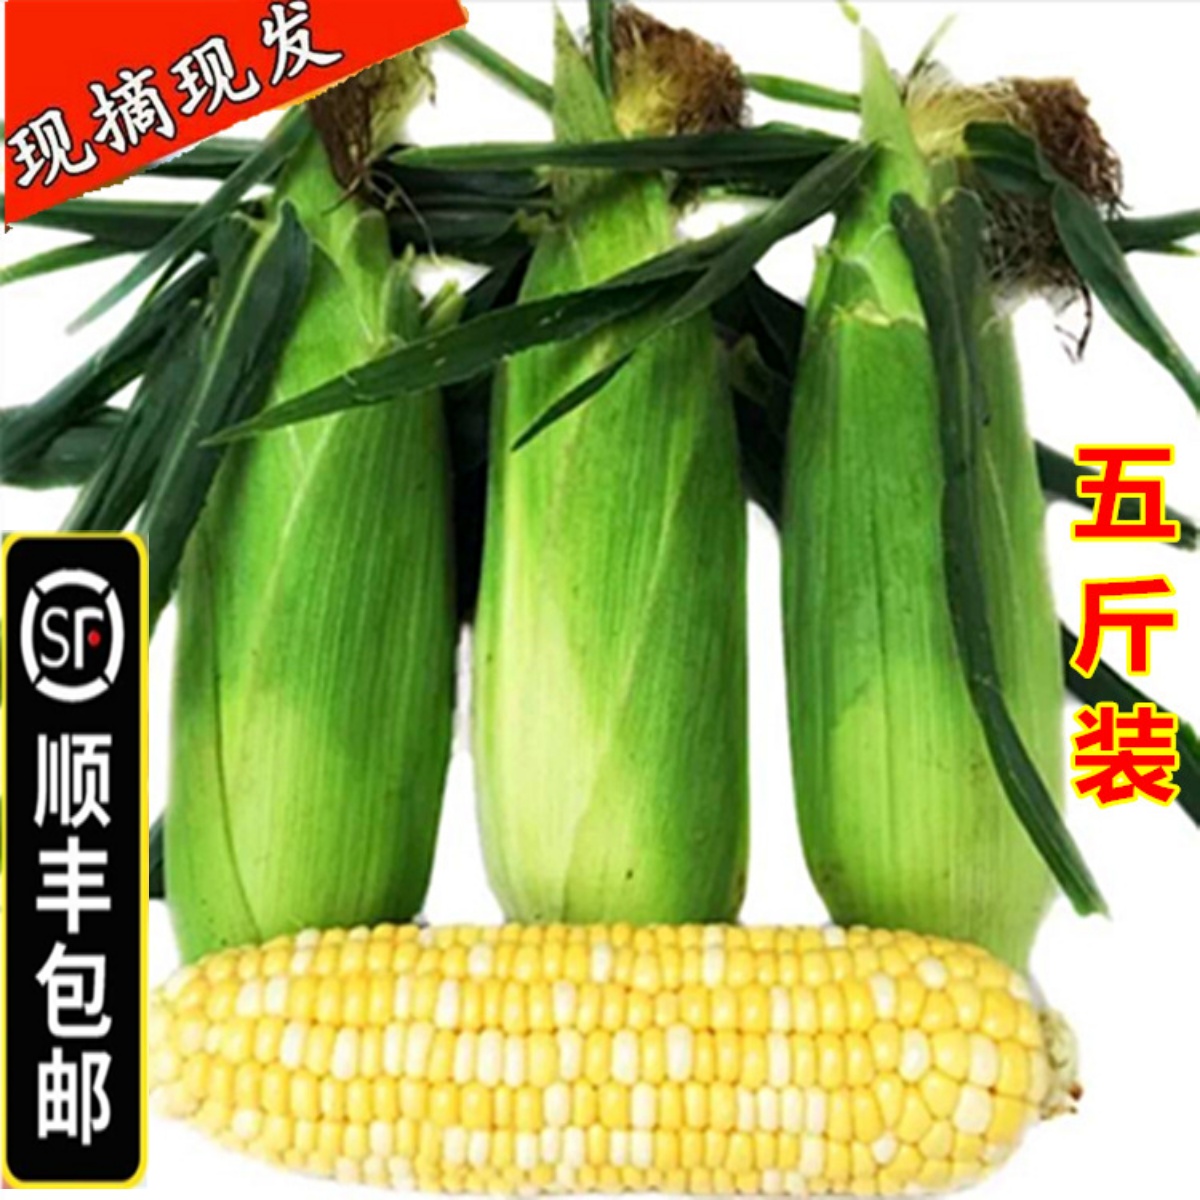 【顺丰包邮】10斤湖北水果玉米新鲜